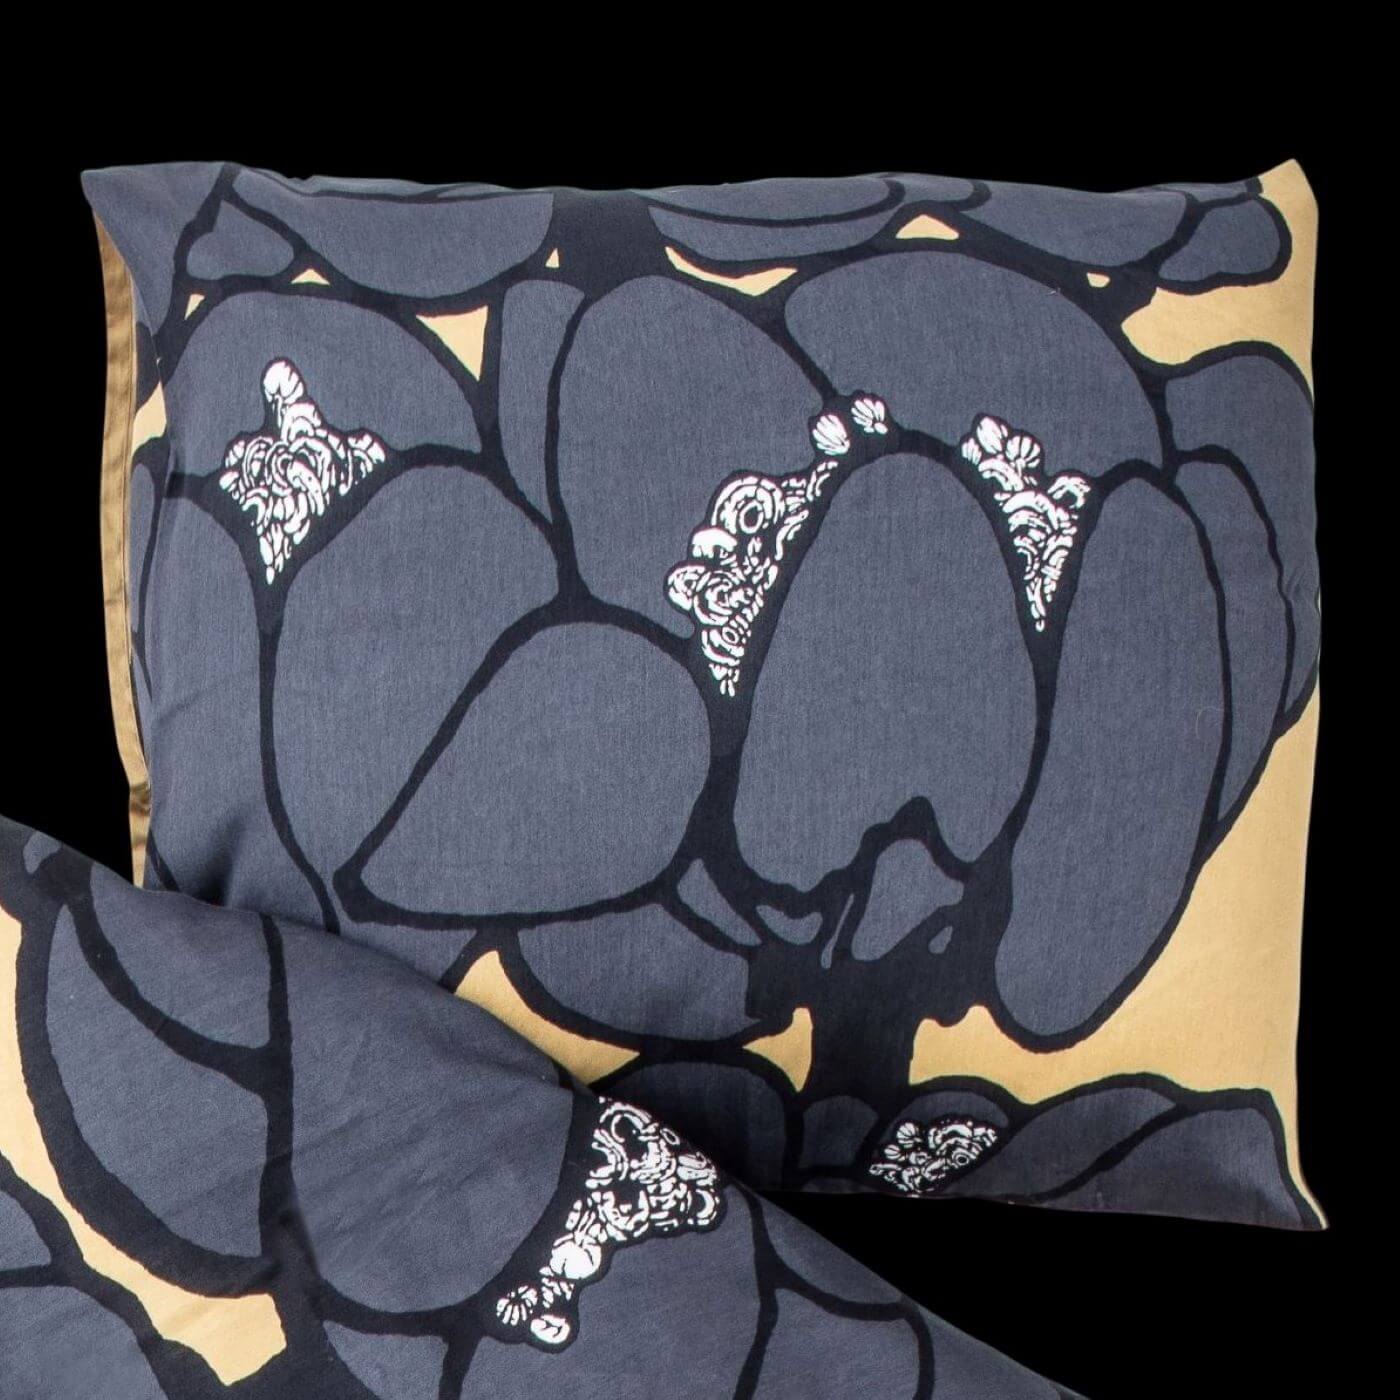 Poszewka elegancka MAKEBA. Bawełniana poszewka na poduszkę w duże szare kwiaty widoczna na czarnym prześcieradle. Nowoczesny skandynawskie design